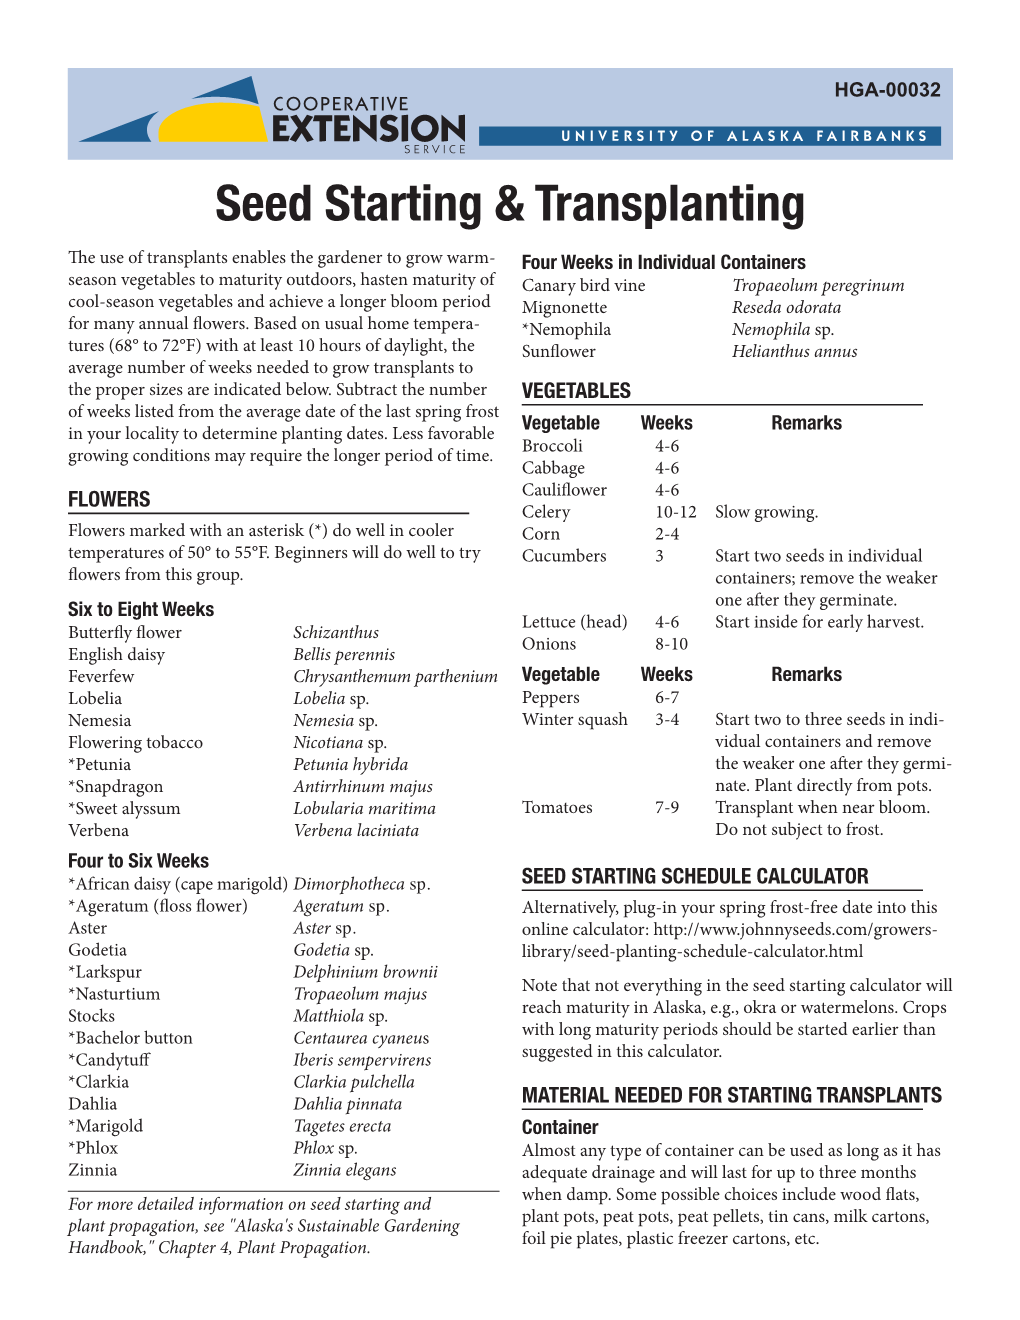 Seed Starting & Transplanting